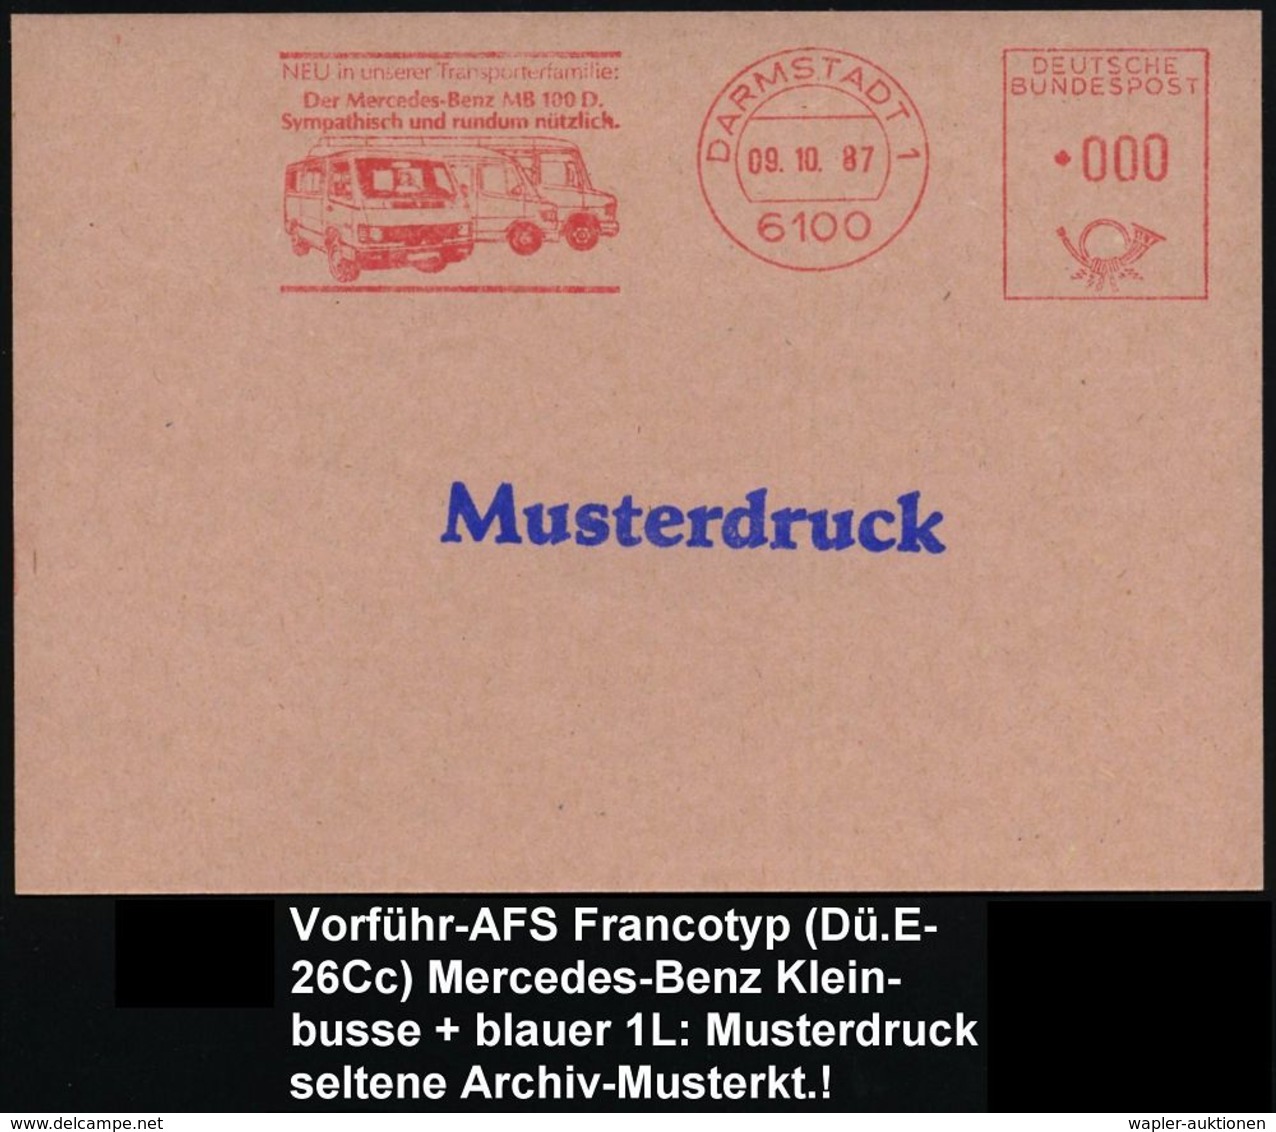 MERCEDES-BENZ  / DAIMLER BENZ : 6100 DARMSTADT 1/ ..Der Mercedes-Benz 100 D... 1987 (9.10.) AFS In 000, Francoty-Archiv- - Autos